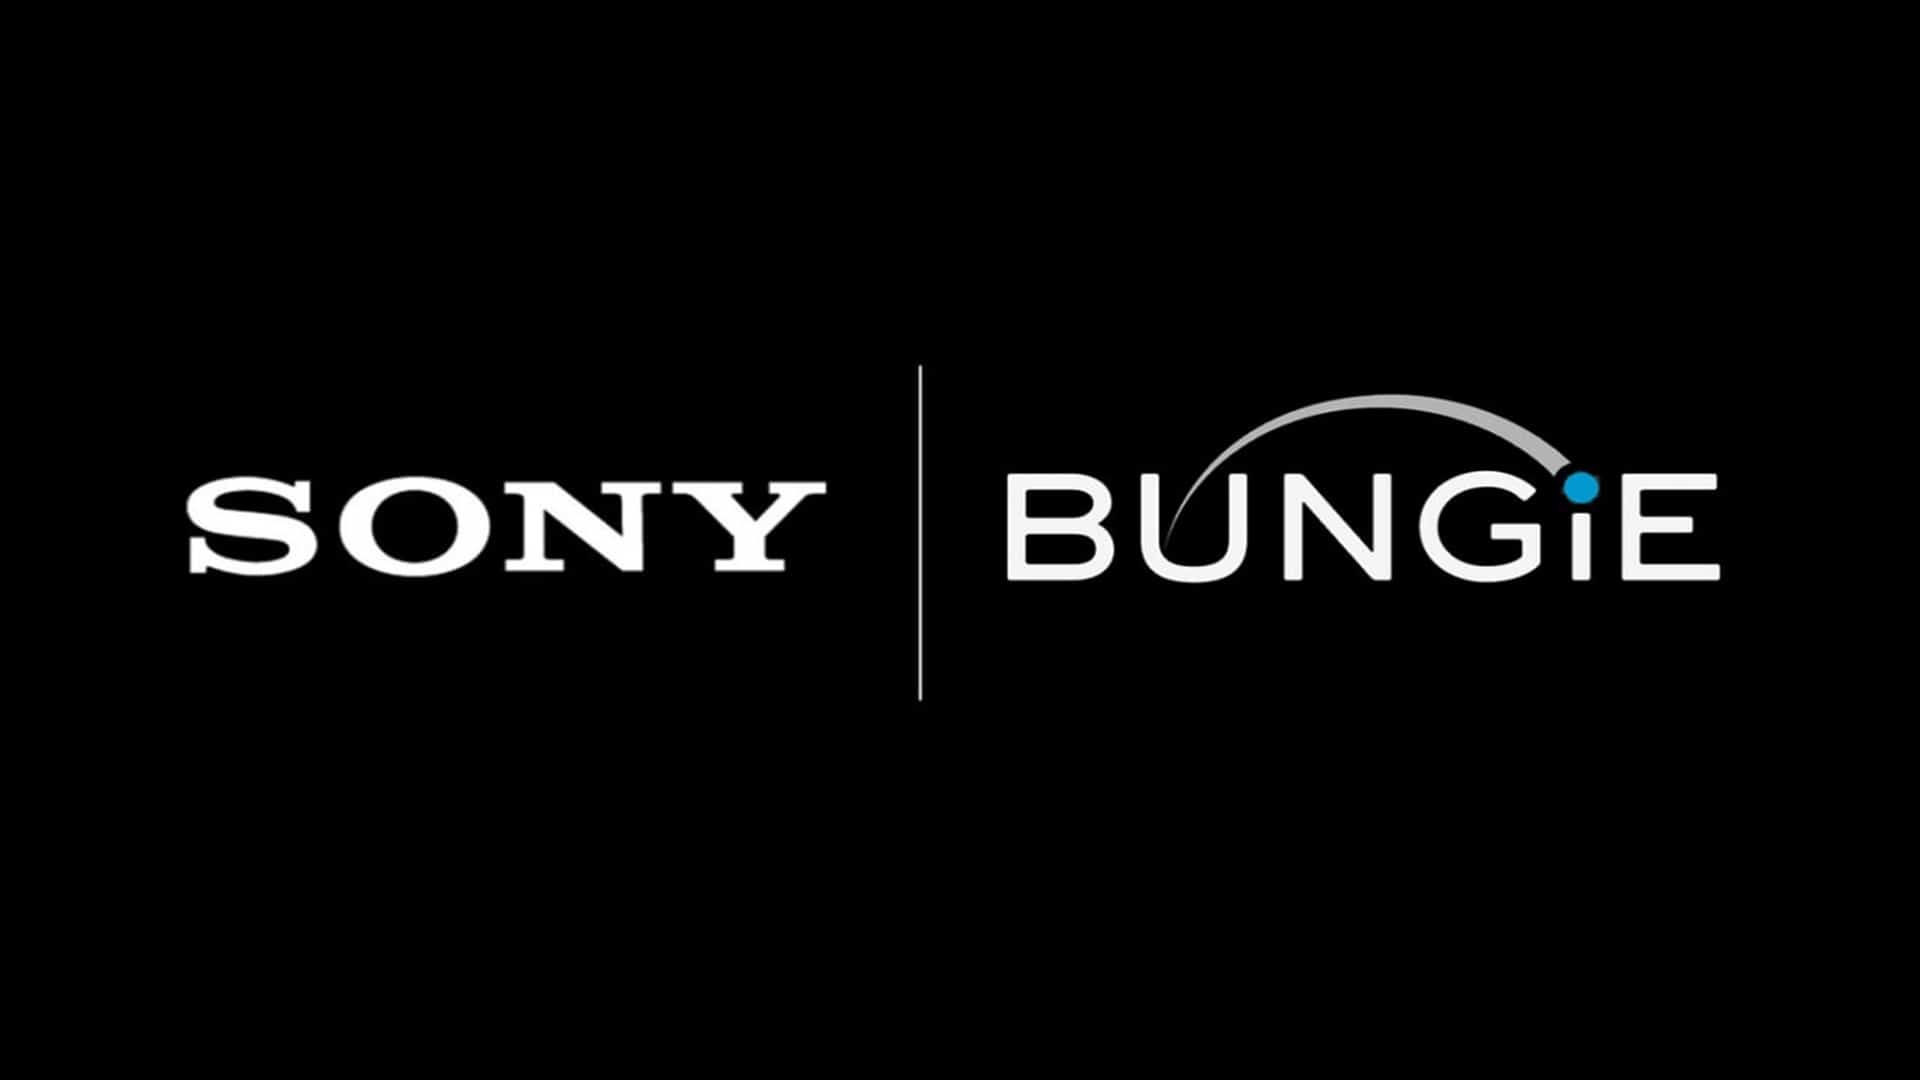 Sony dice que la adquisición de Bungie es el primer paso hacia el trabajo multiplataforma, GamersRD